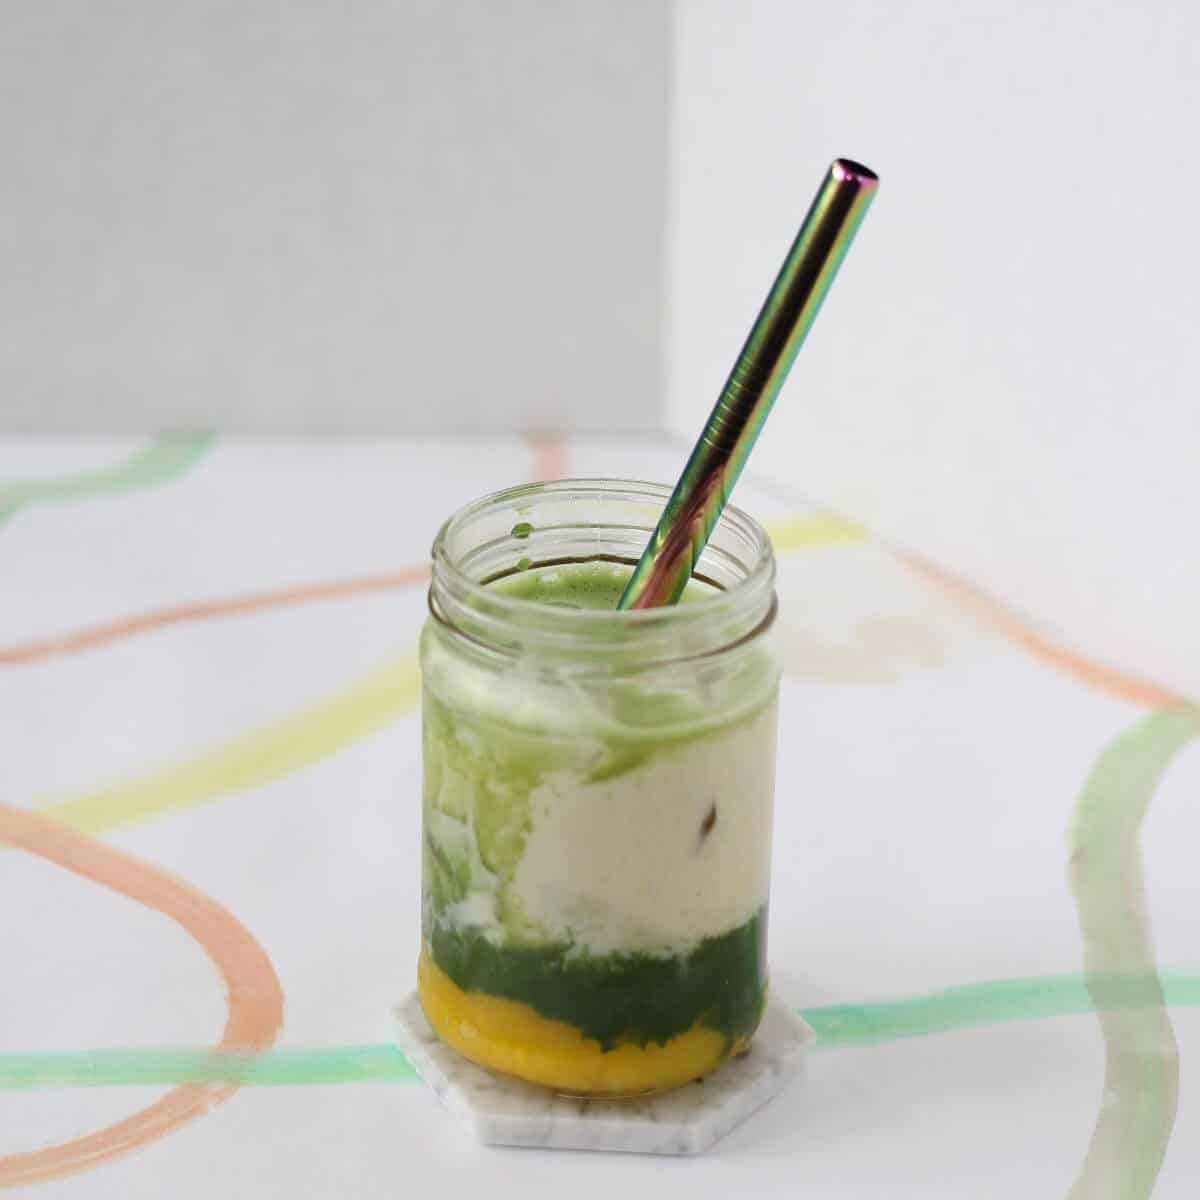 Mango Matcha Green Tea Latte: Serve Iced or Blended - The Default Cook